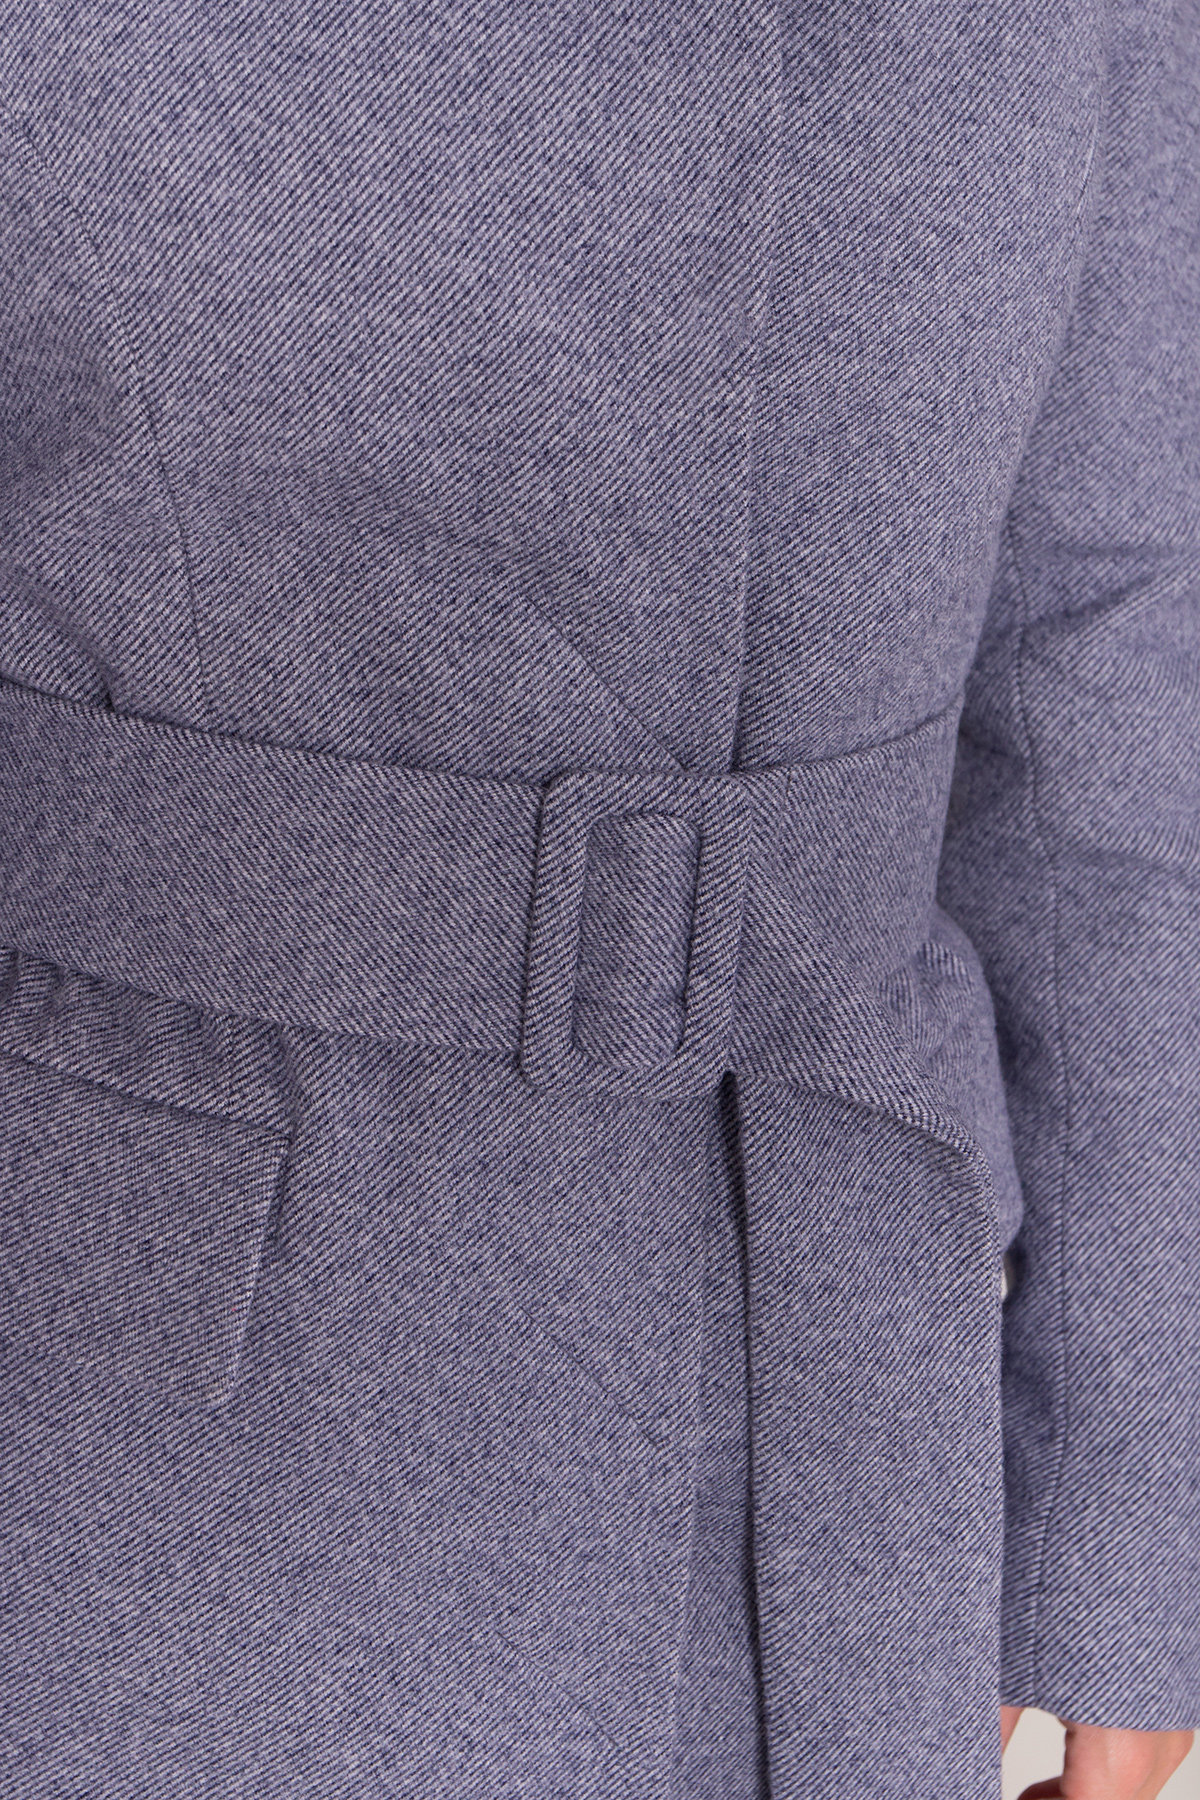 Полуприталенное зимнее пальто с отложным воротником Лабио 8182 АРТ. 44188 Цвет: Джинс 3 - фото 11, интернет магазин tm-modus.ru